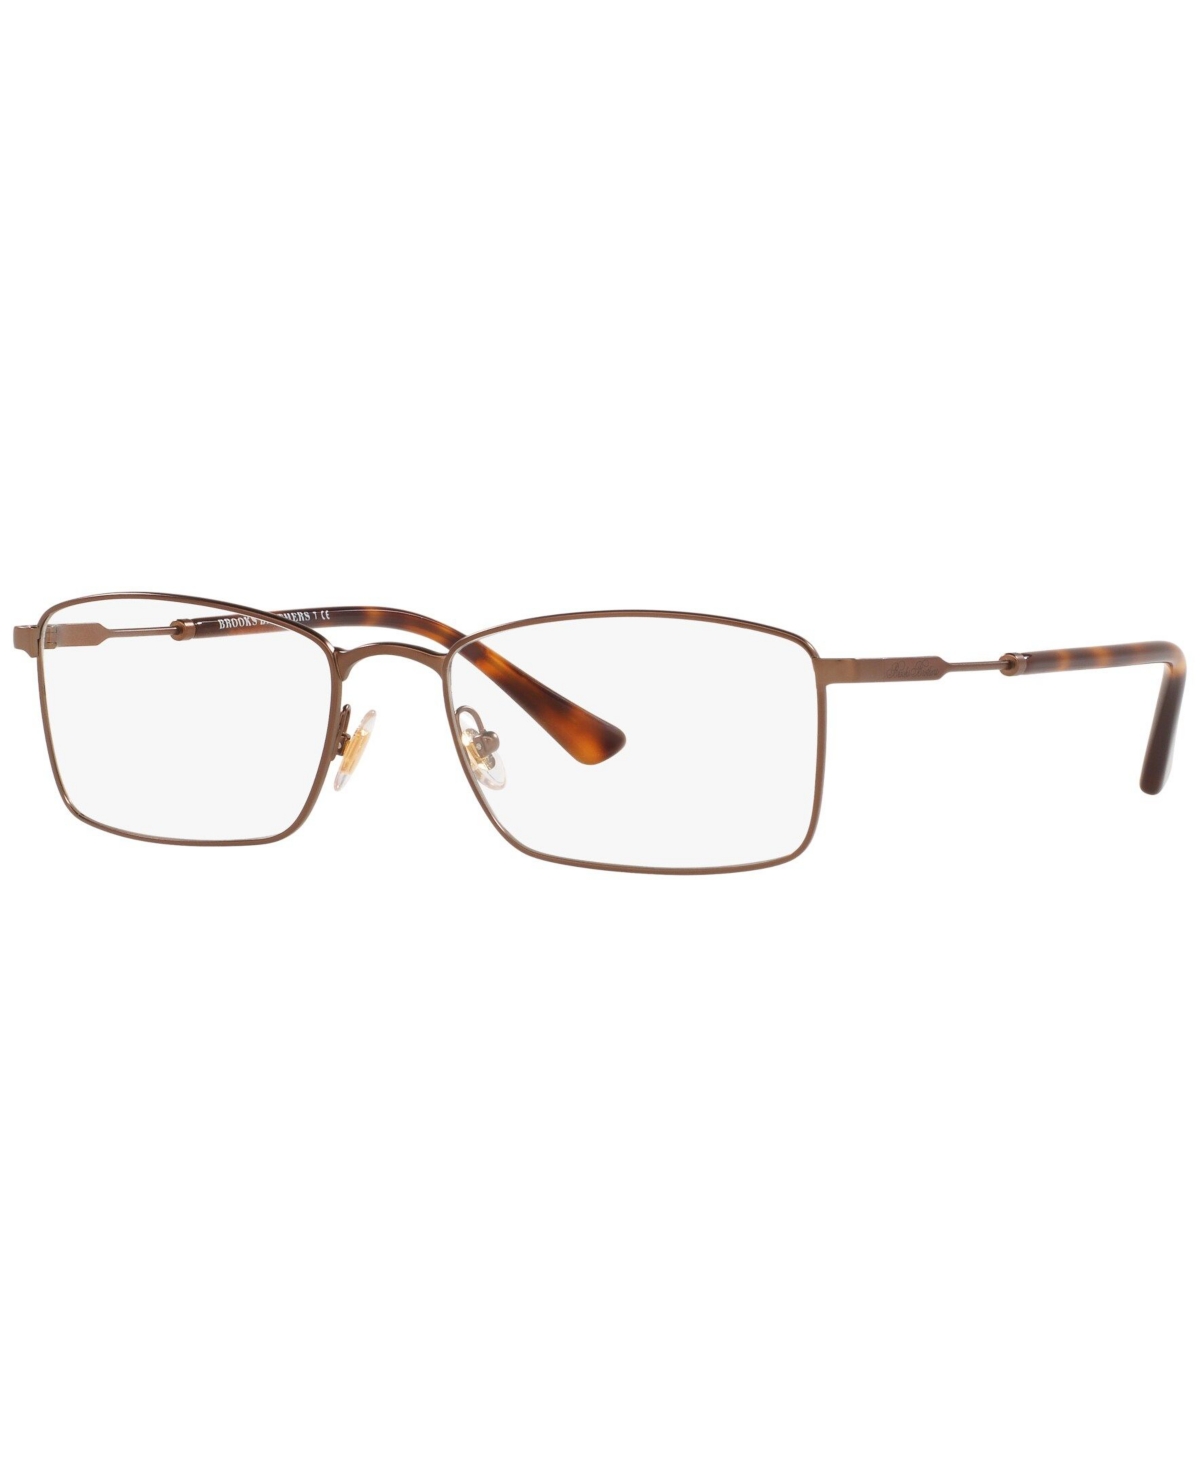 BB1073T Men's Rectangle Eyeglasses - Brown